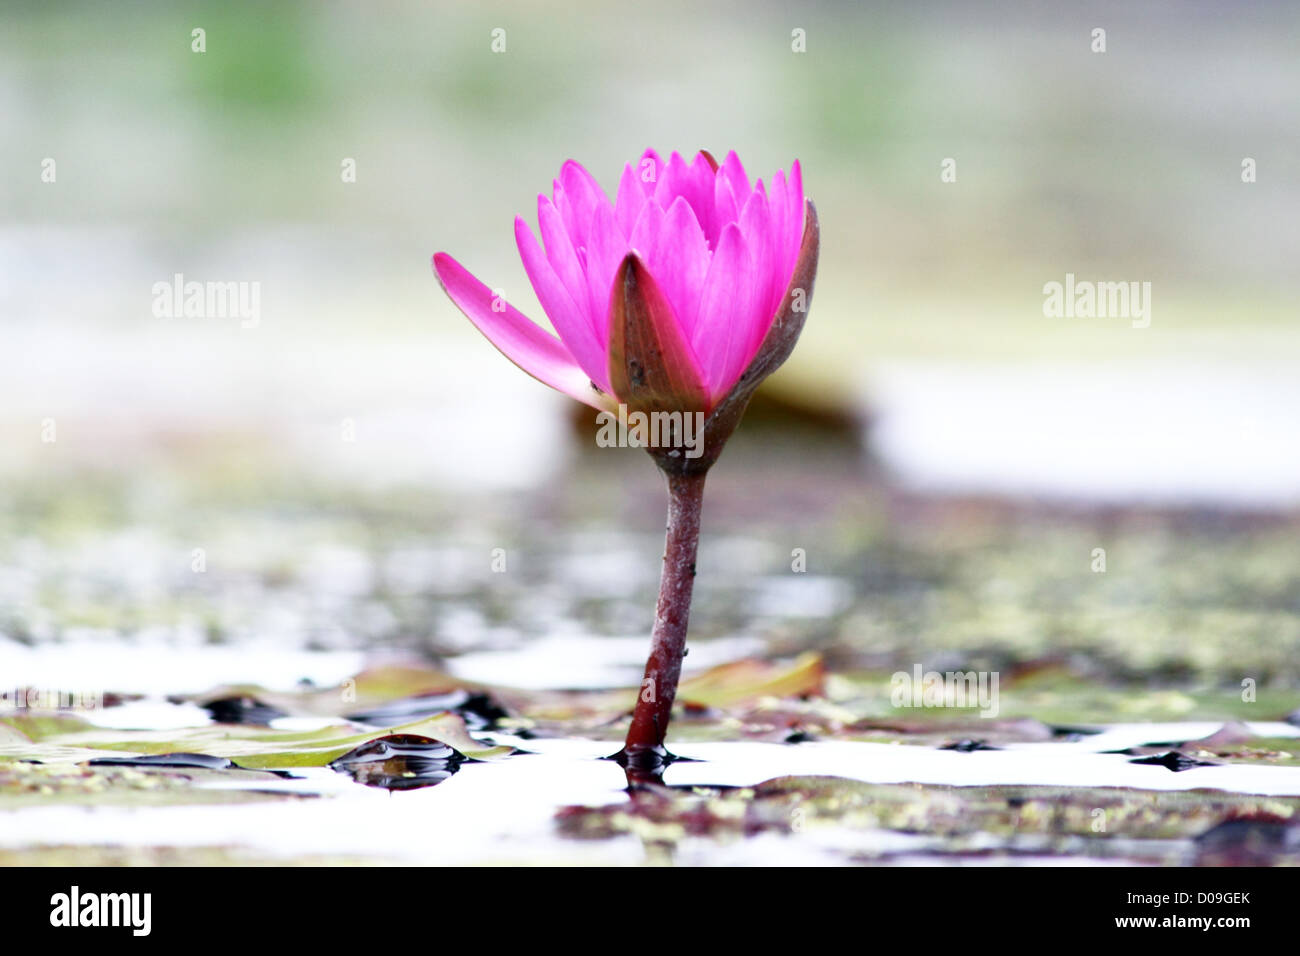 Fotografia di un giglio di acqua con fiore in fiore Foto Stock